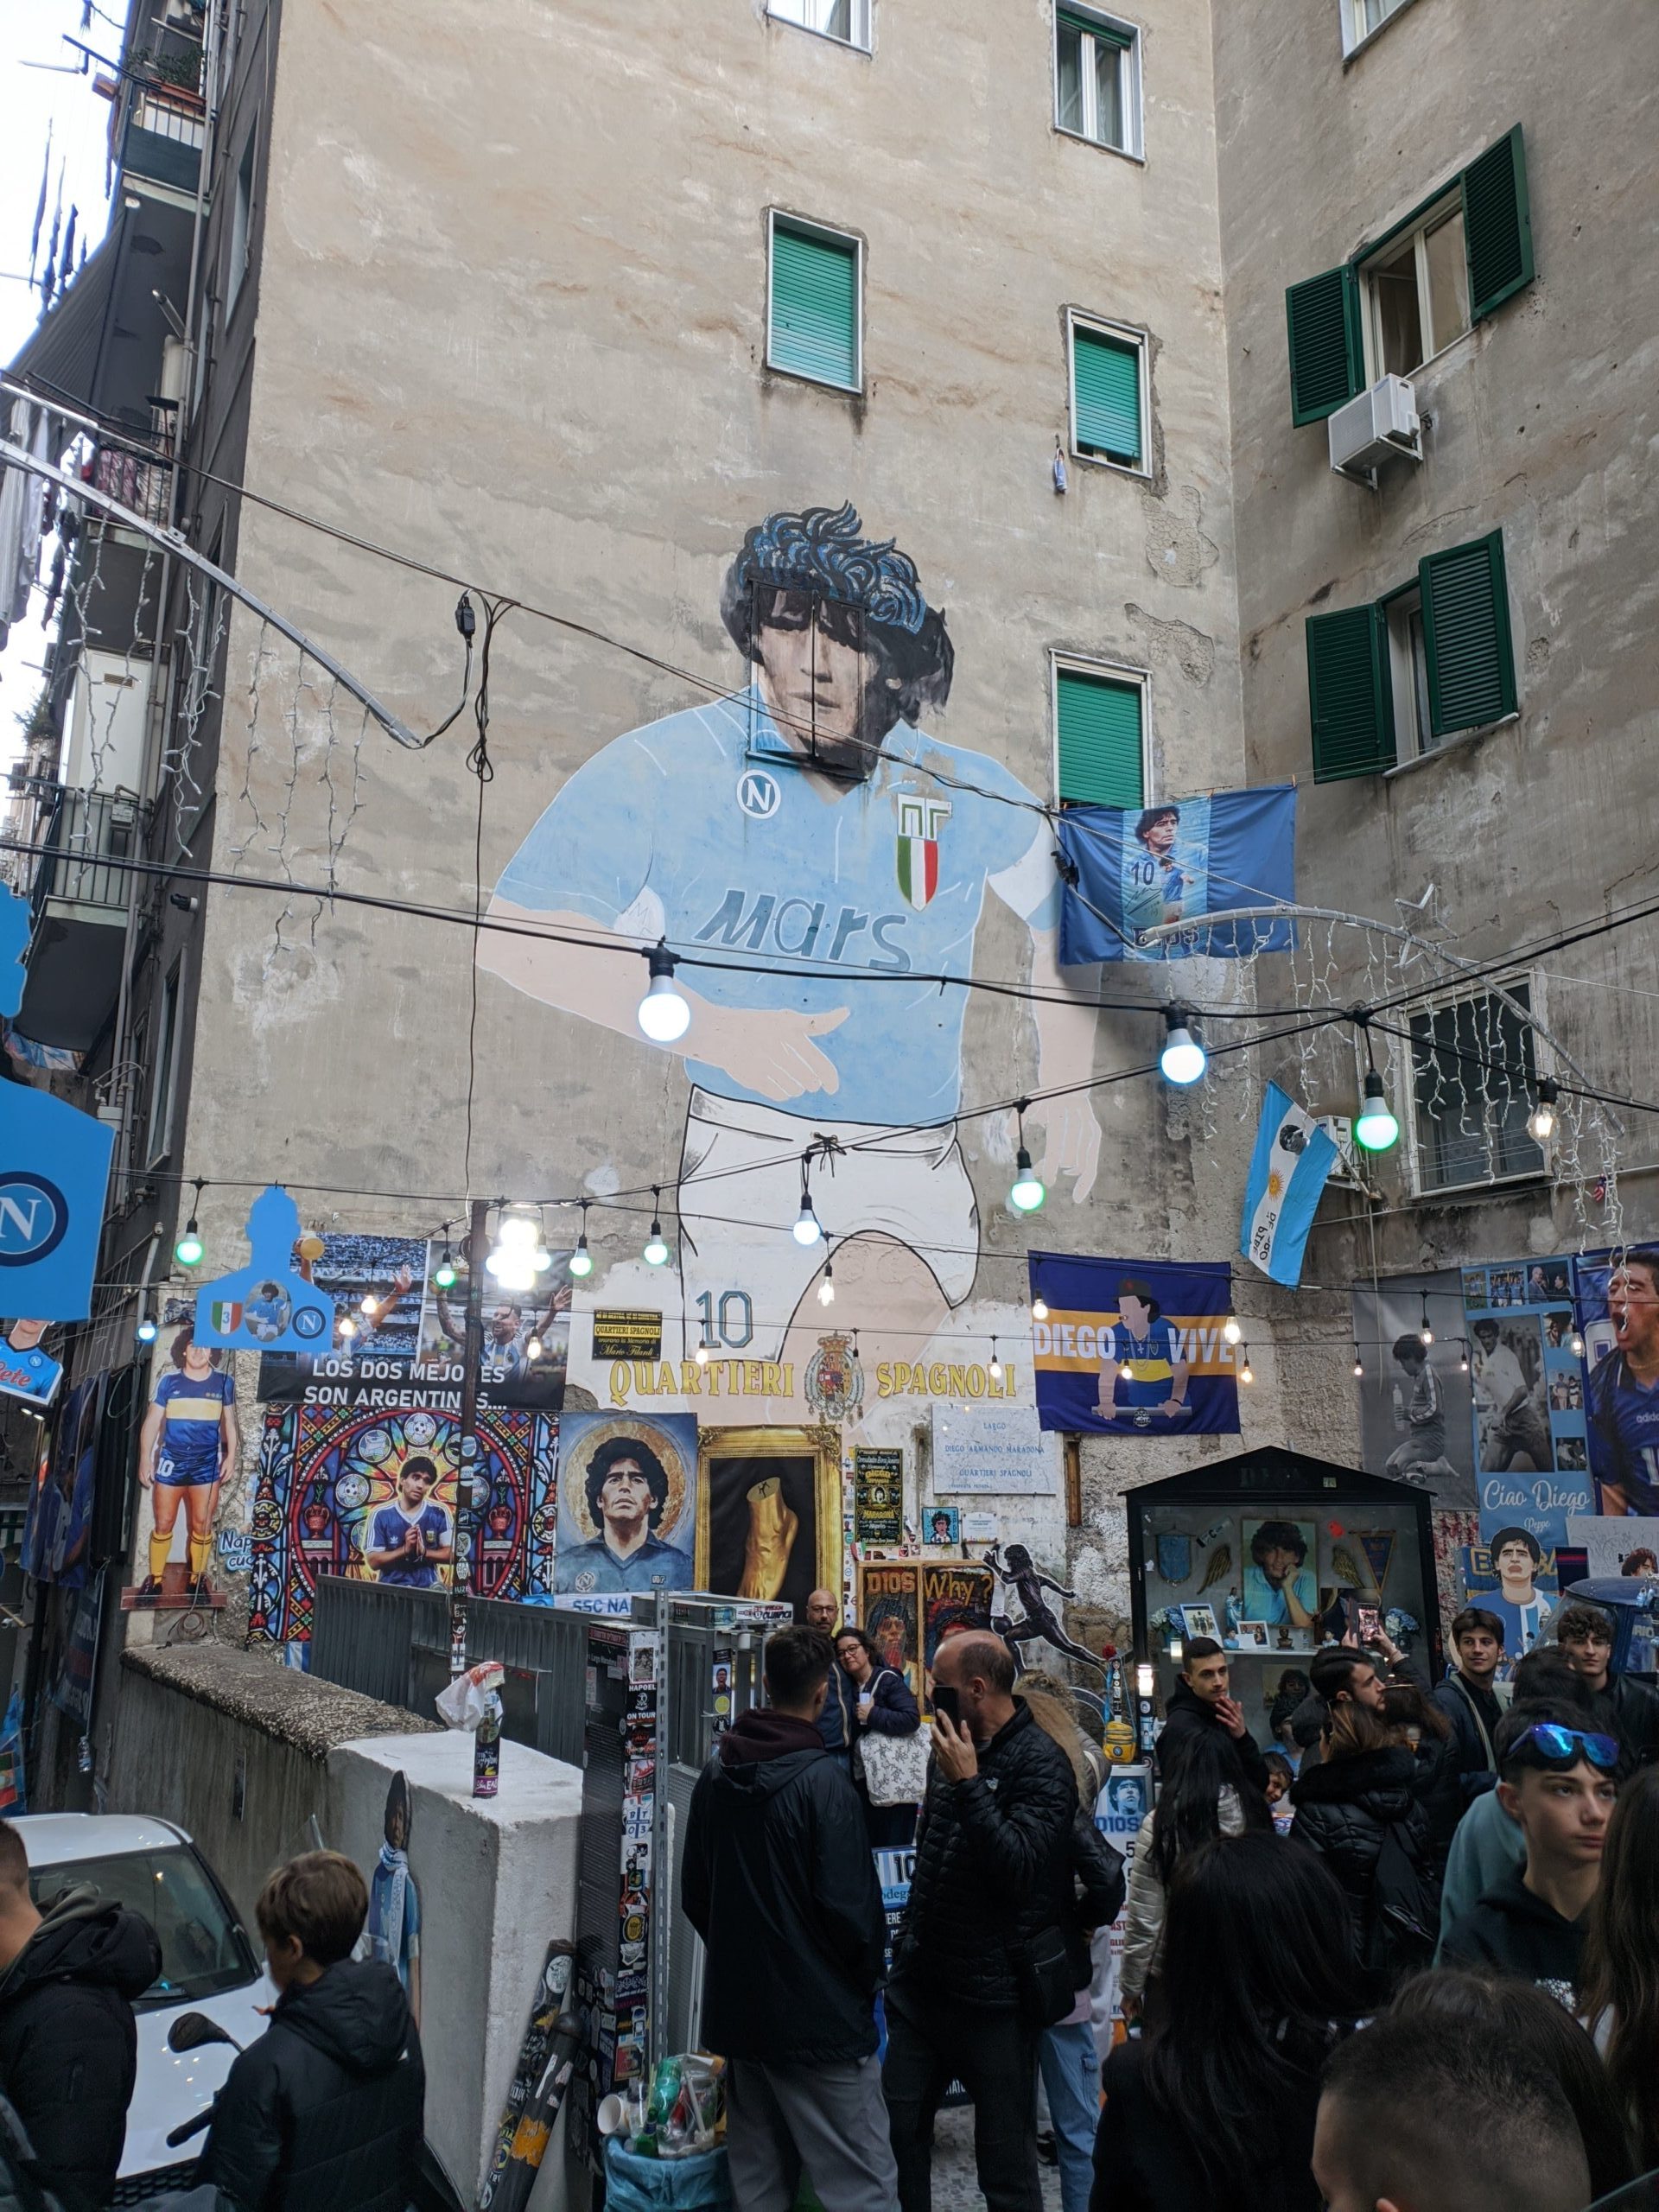 Foto da fachada de um prédio, nele está um mural que retrata Maradona, de uniforme do Napoli como se estivesse jogando futebol.